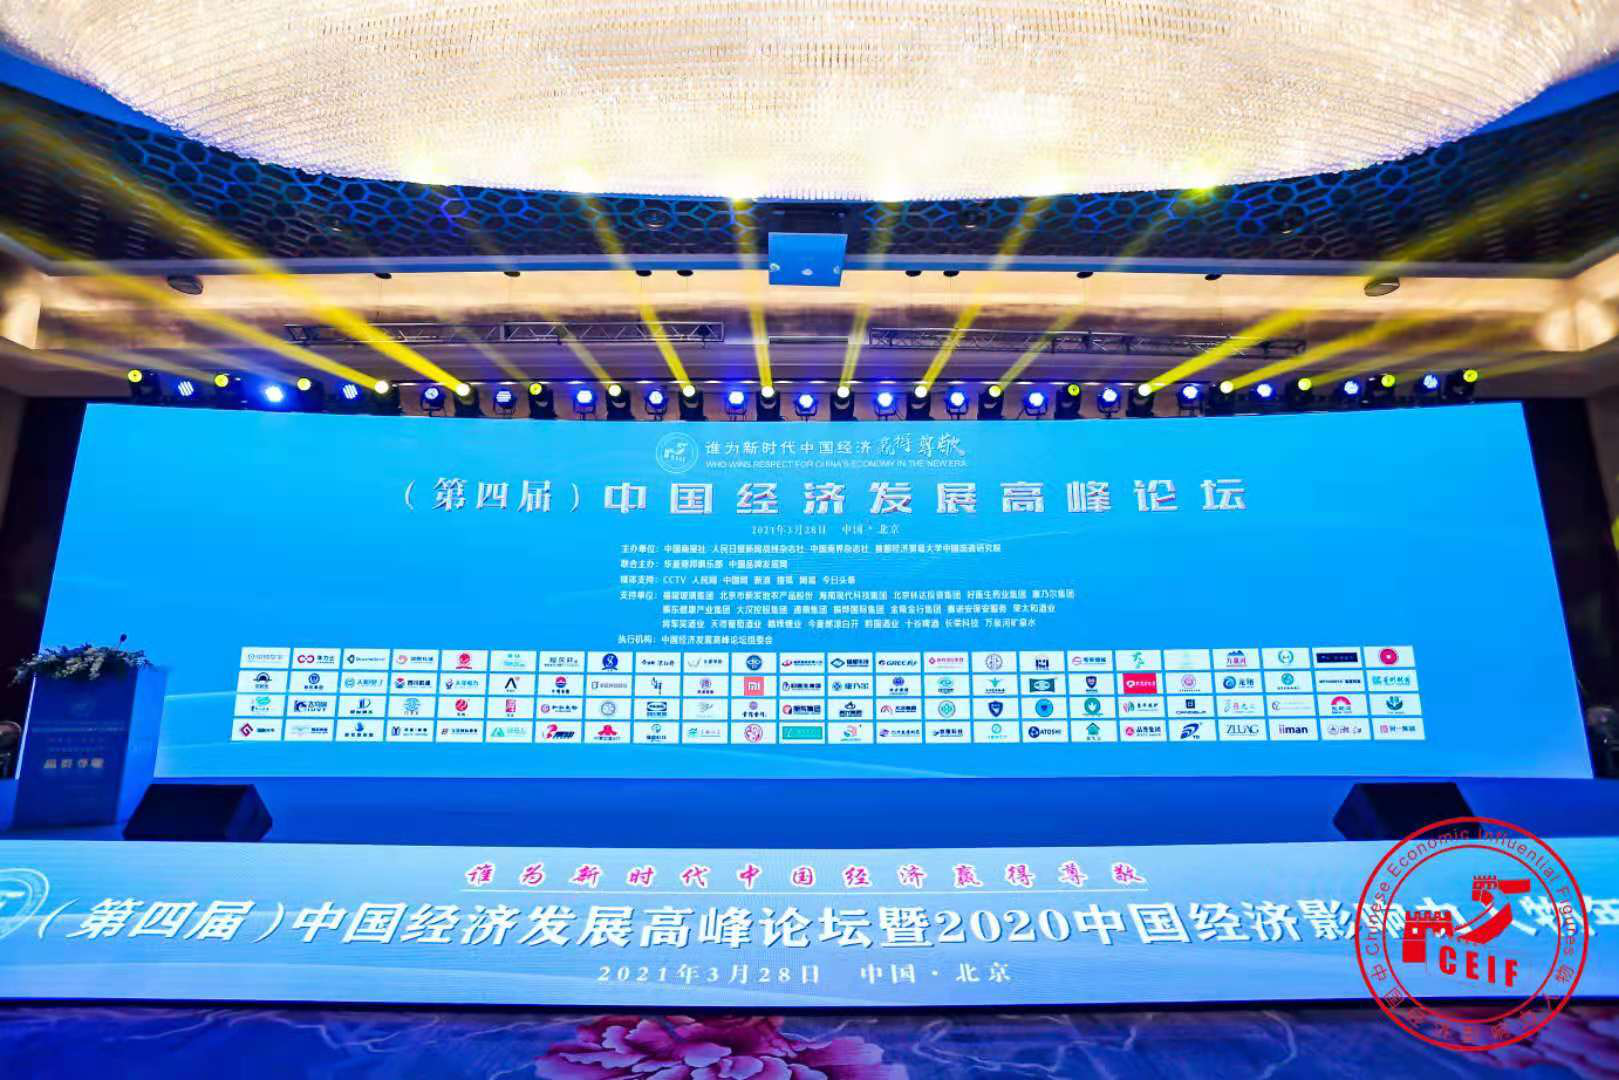 宜兴模架科技产业园董事长王进平荣获“2020中国经济十大匠心人物”称号